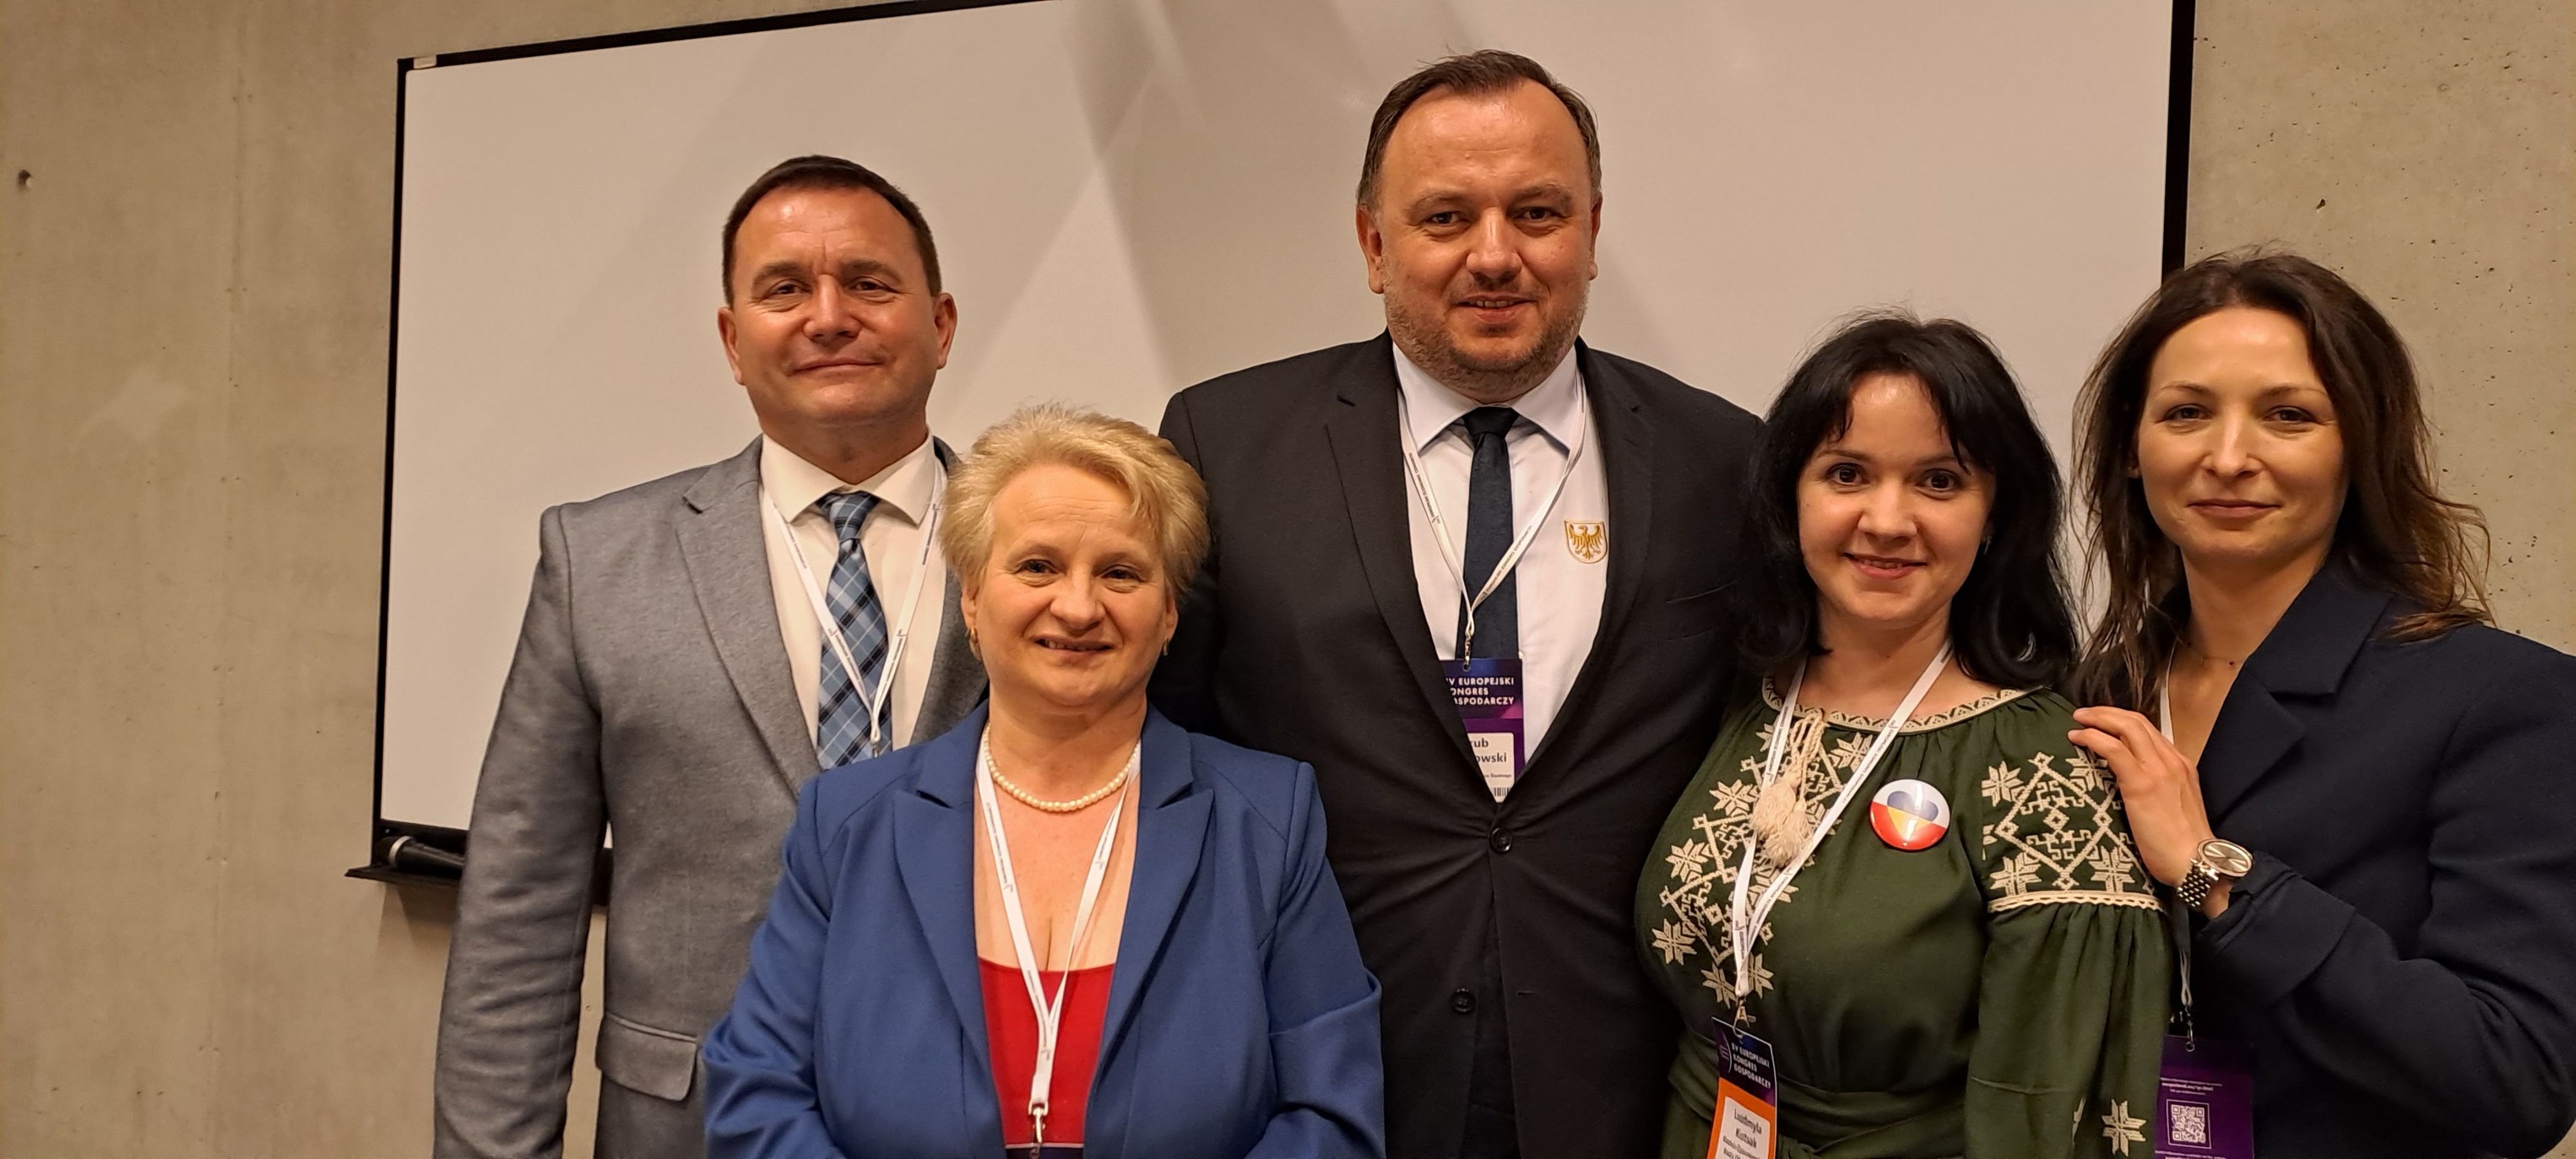 Депутати обласної ради взяли участь у XV Європейському економічному конгресі